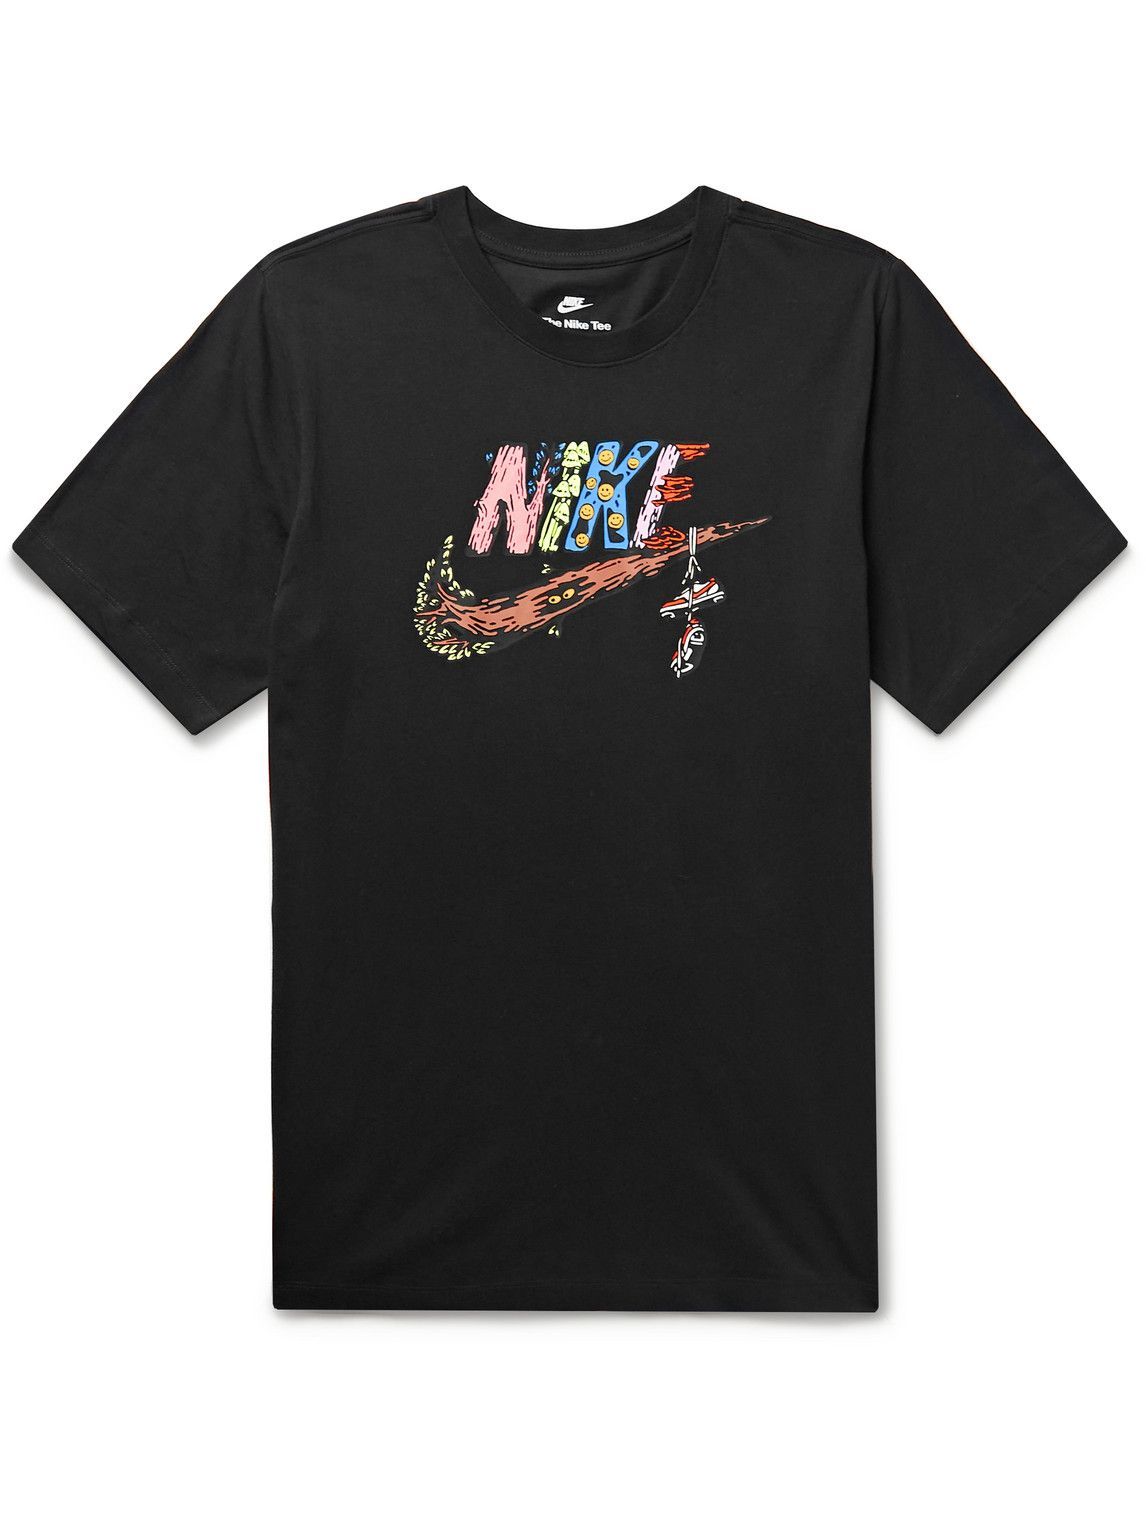 Nike - Sportswear Logo-Print Cotton-Jersey T-Shirt - Black Nike